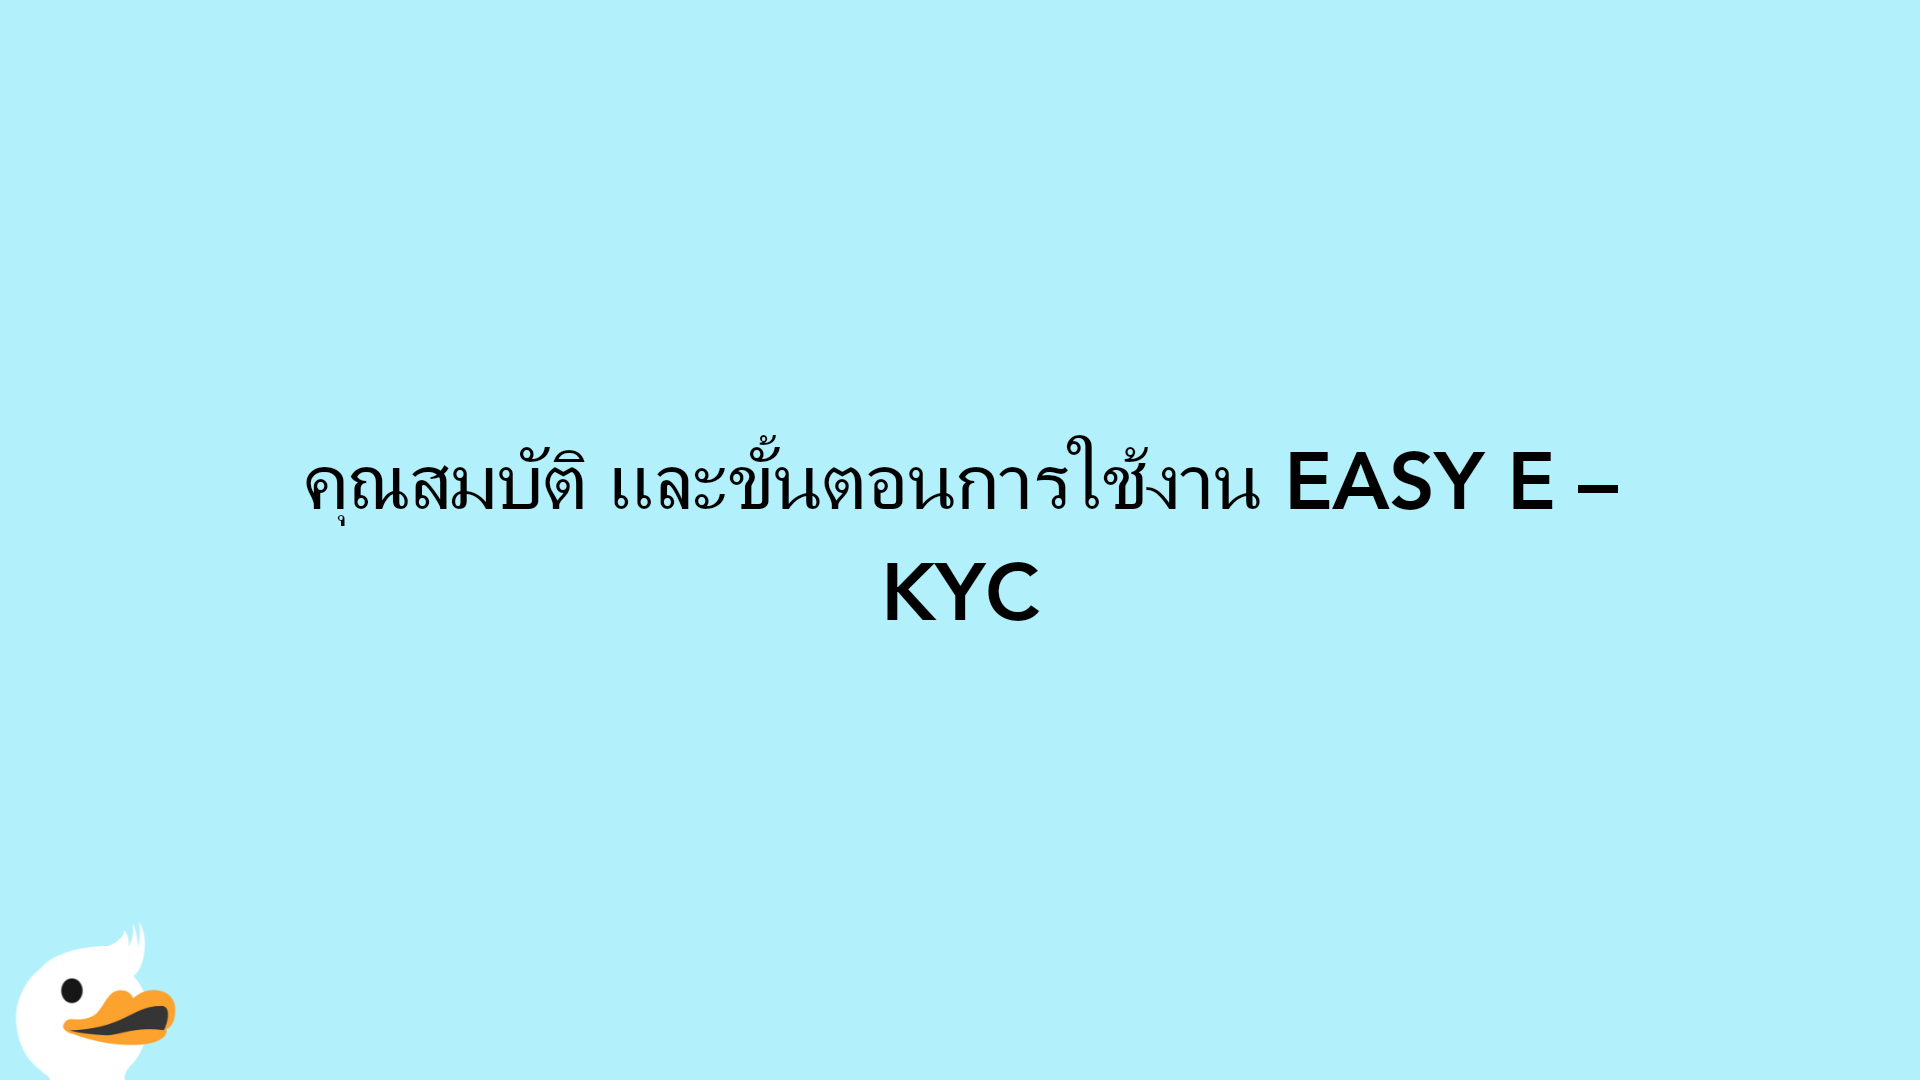 คุณสมบัติ และขั้นตอนการใช้งาน EASY E – KYC